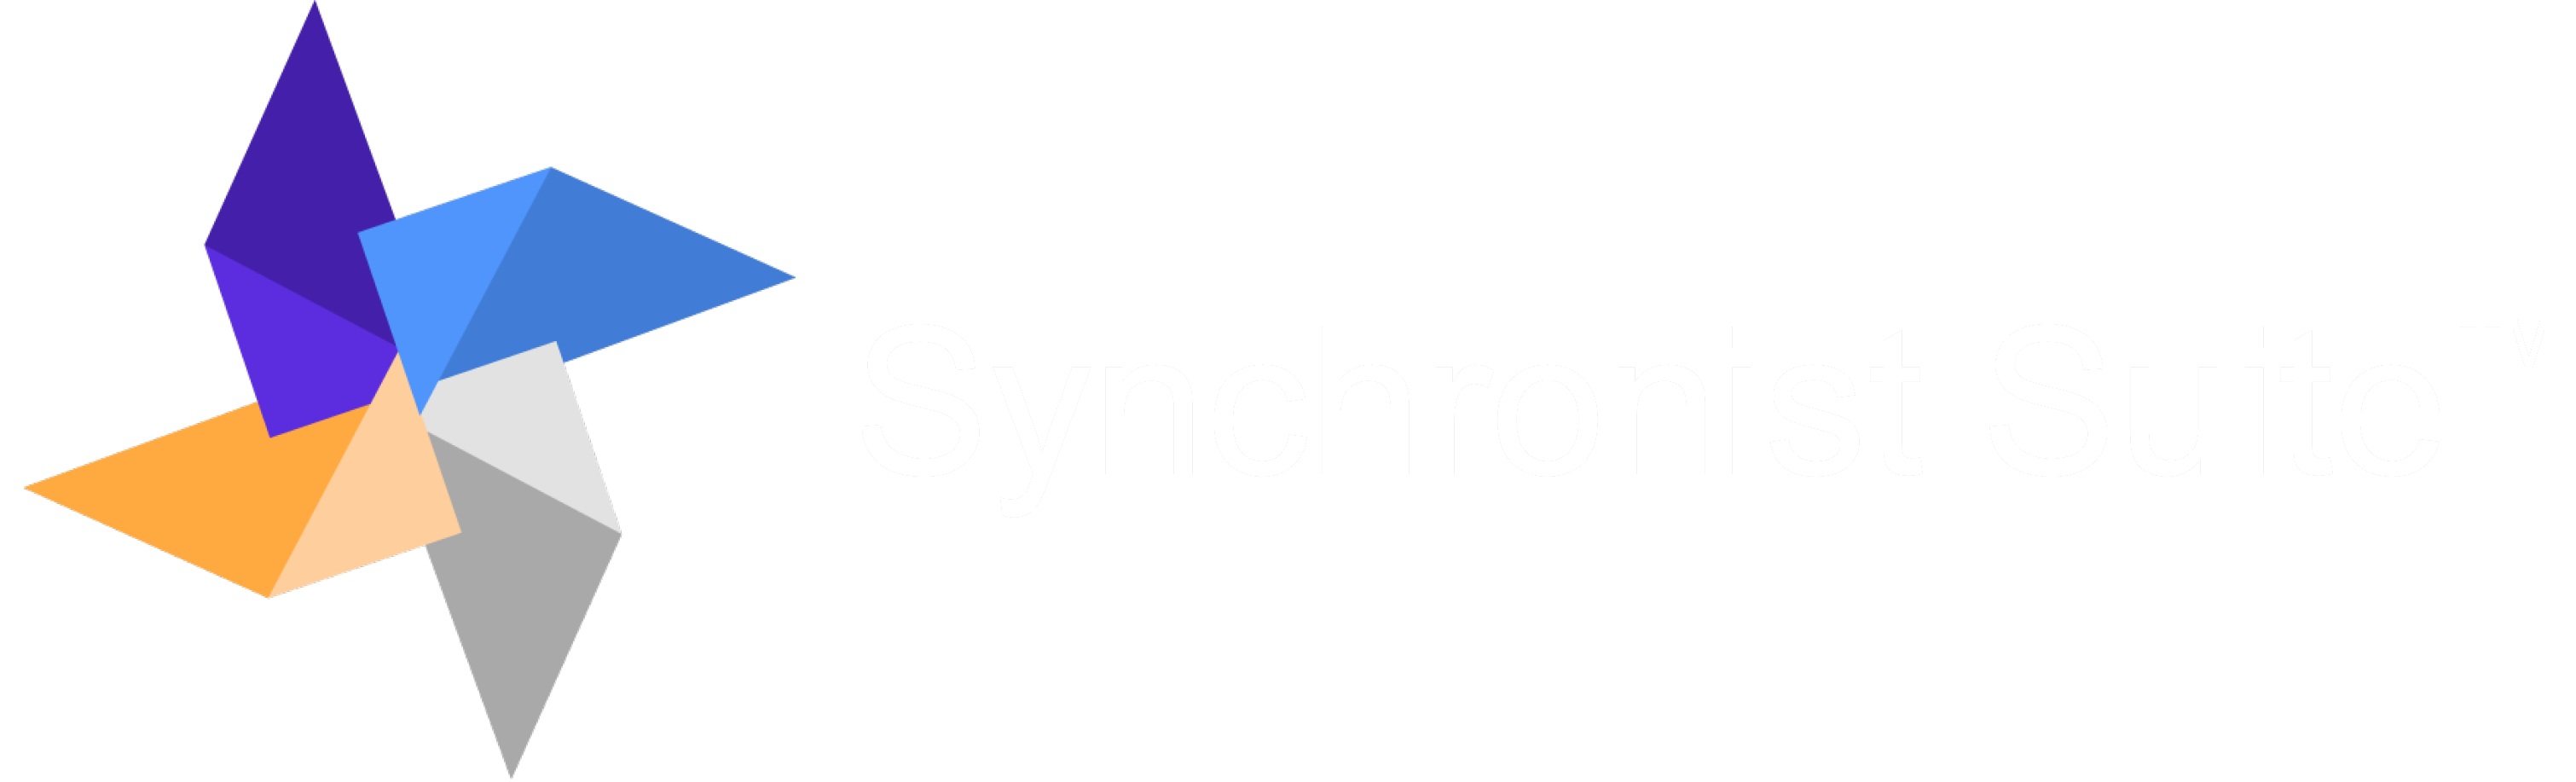 Synchronist Suite Logo by Blane Canada Ltd